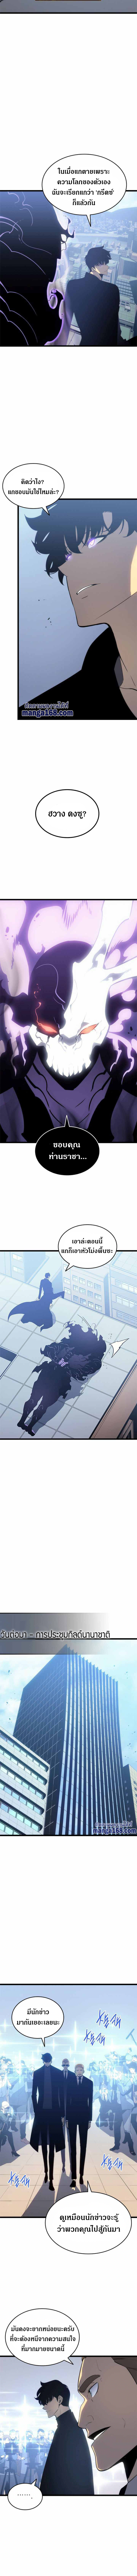 อ่านโซโล่แปลไทย